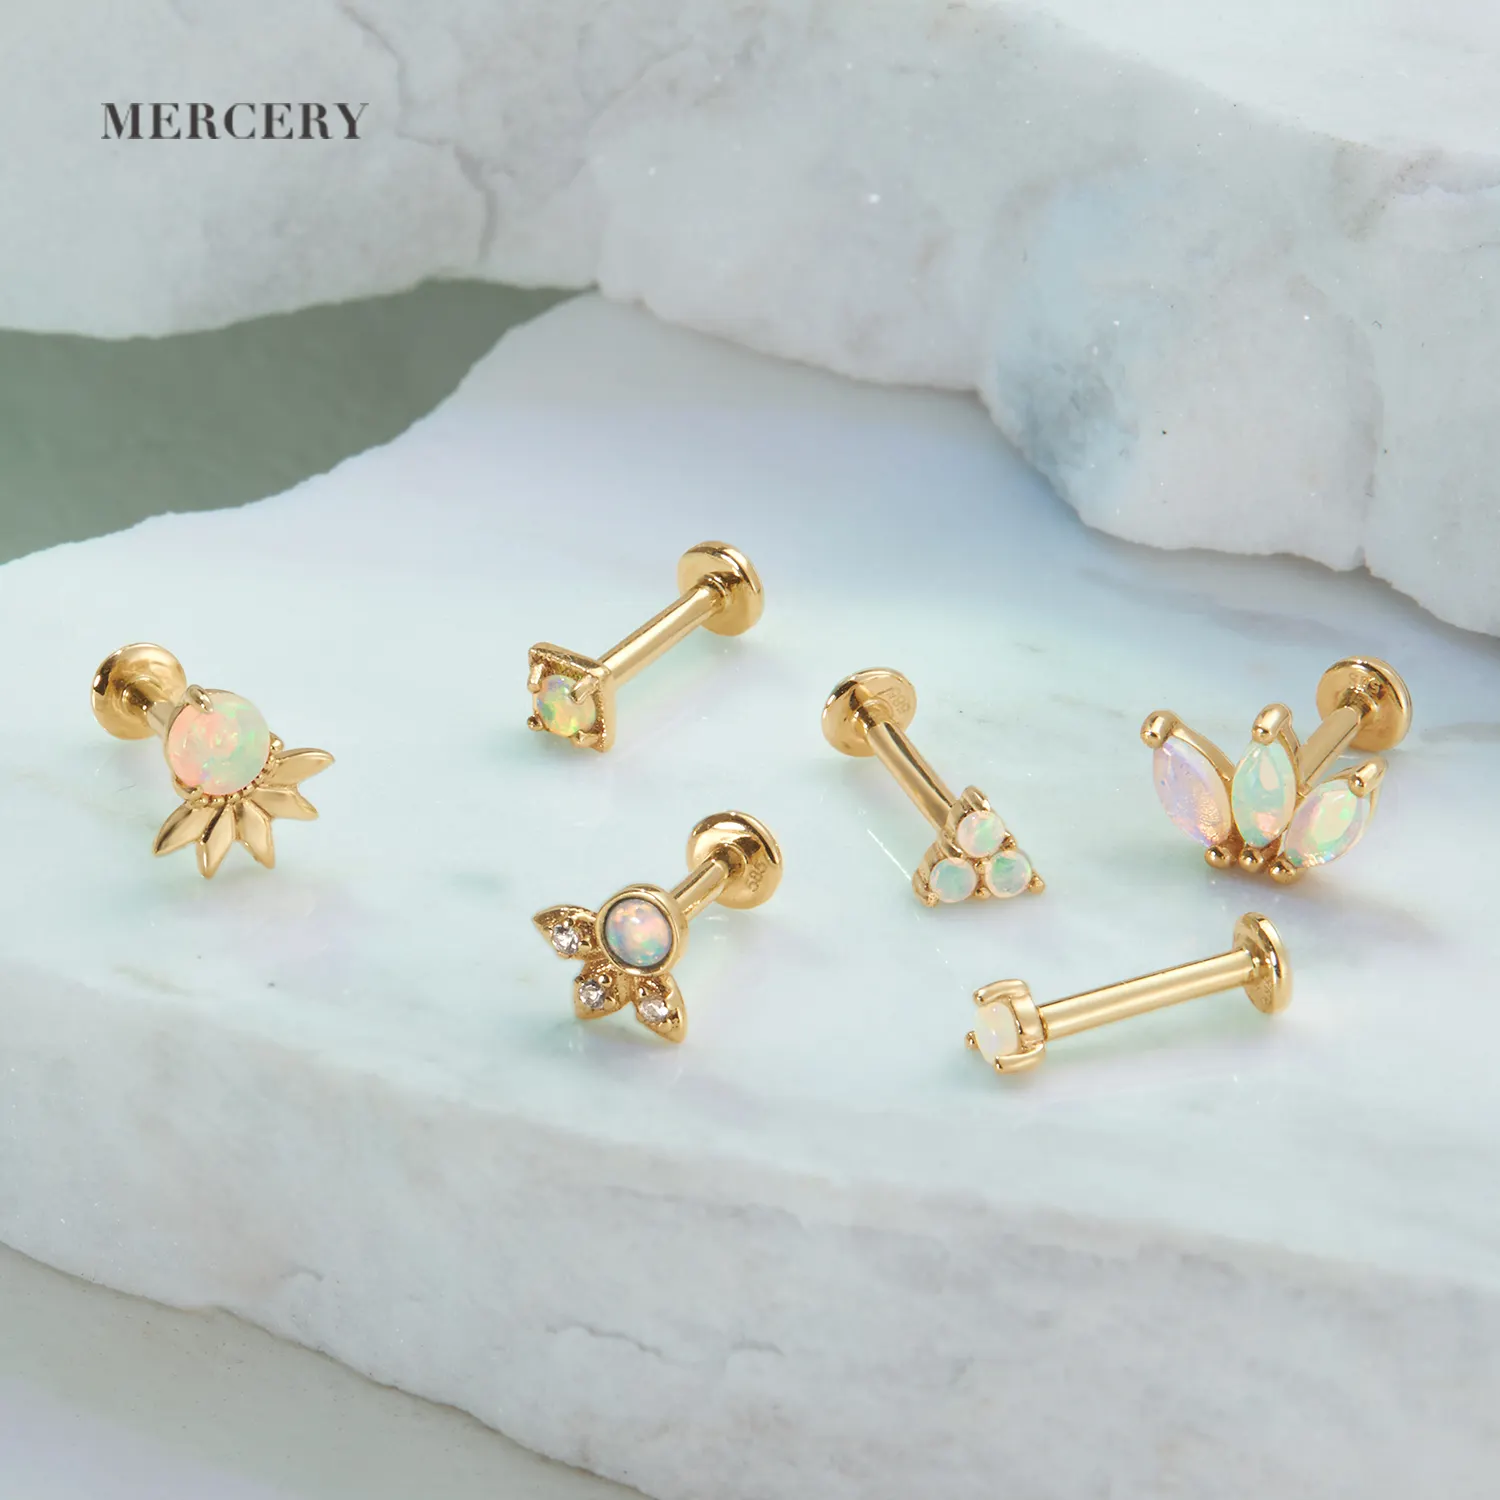 Mercery Piercing göbek takısı taş markiz Tragus Daith kulak damızlık Opal sarmal 14K katı altın Flatback Piercing küpe